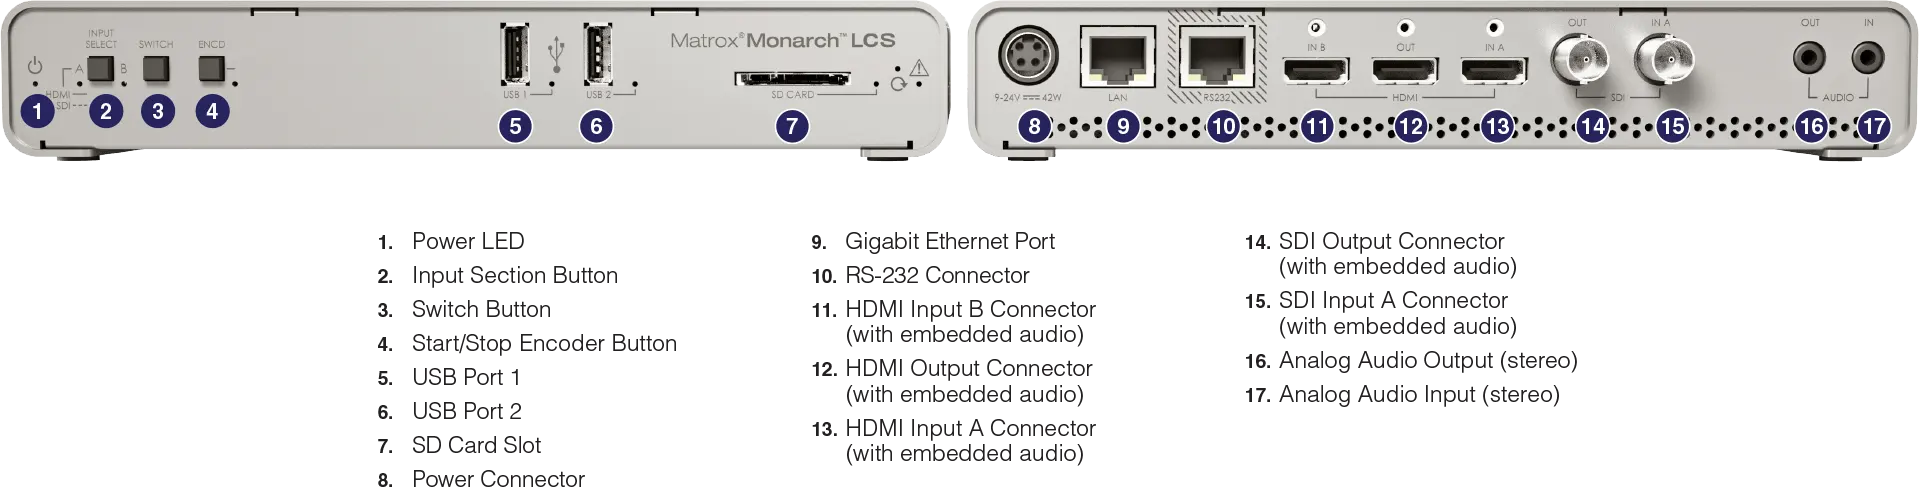 Matrox Monarch LCS - Conexiones